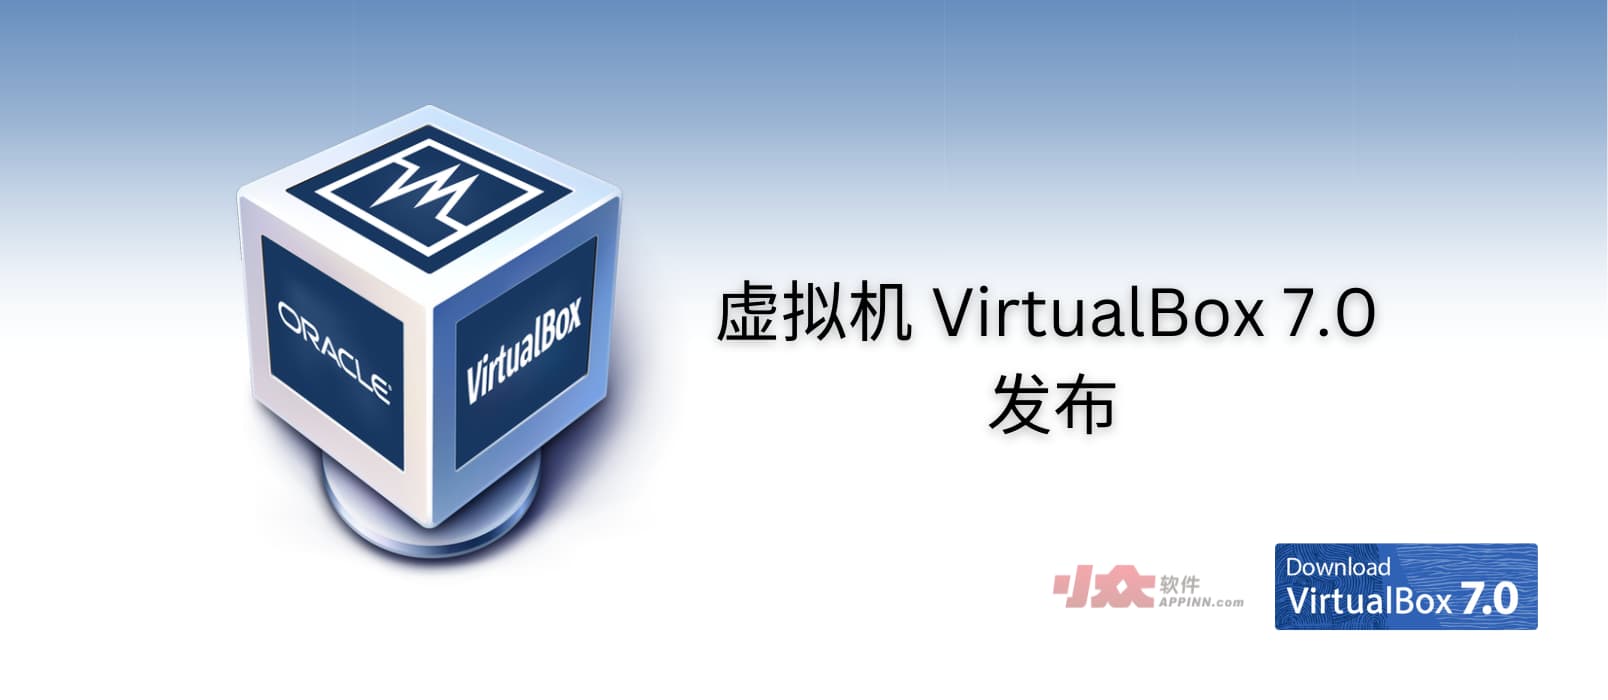 免费虚拟机软件 VirtualBox 7.0 发布，距离上一个大版本发布已相隔 4 年